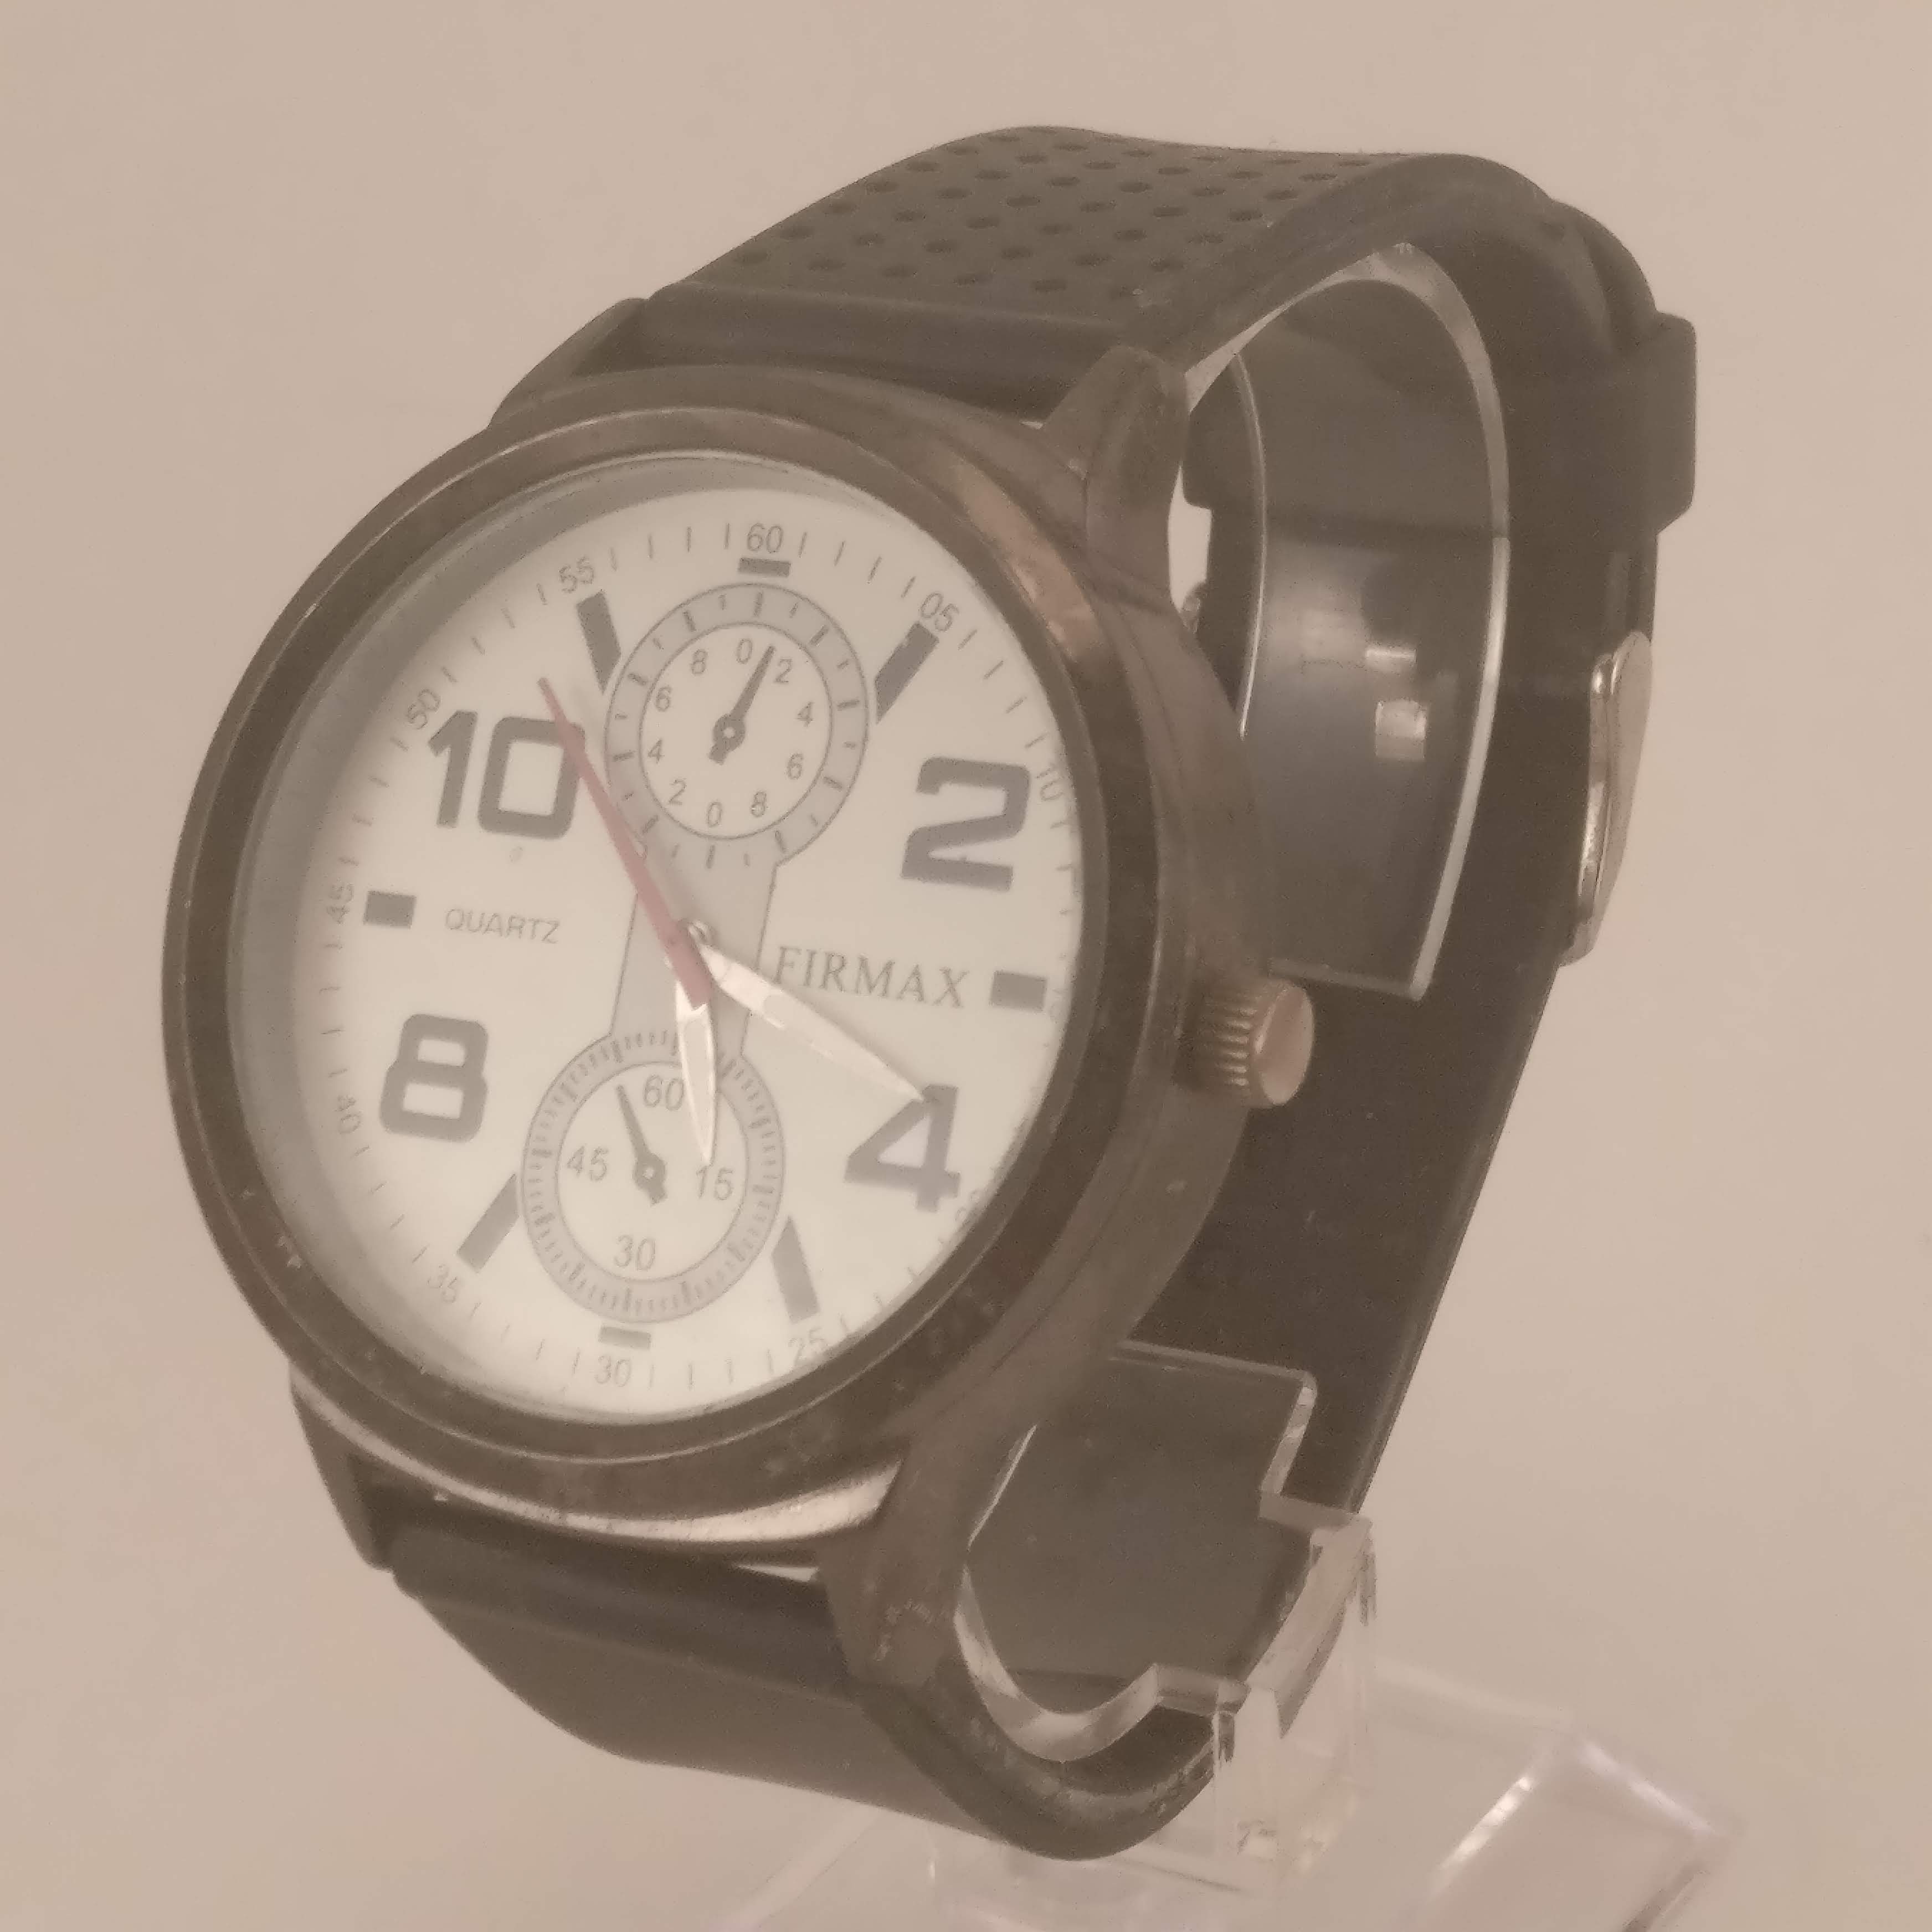 Firmax Oversized Heren Horloge, Rechterkant